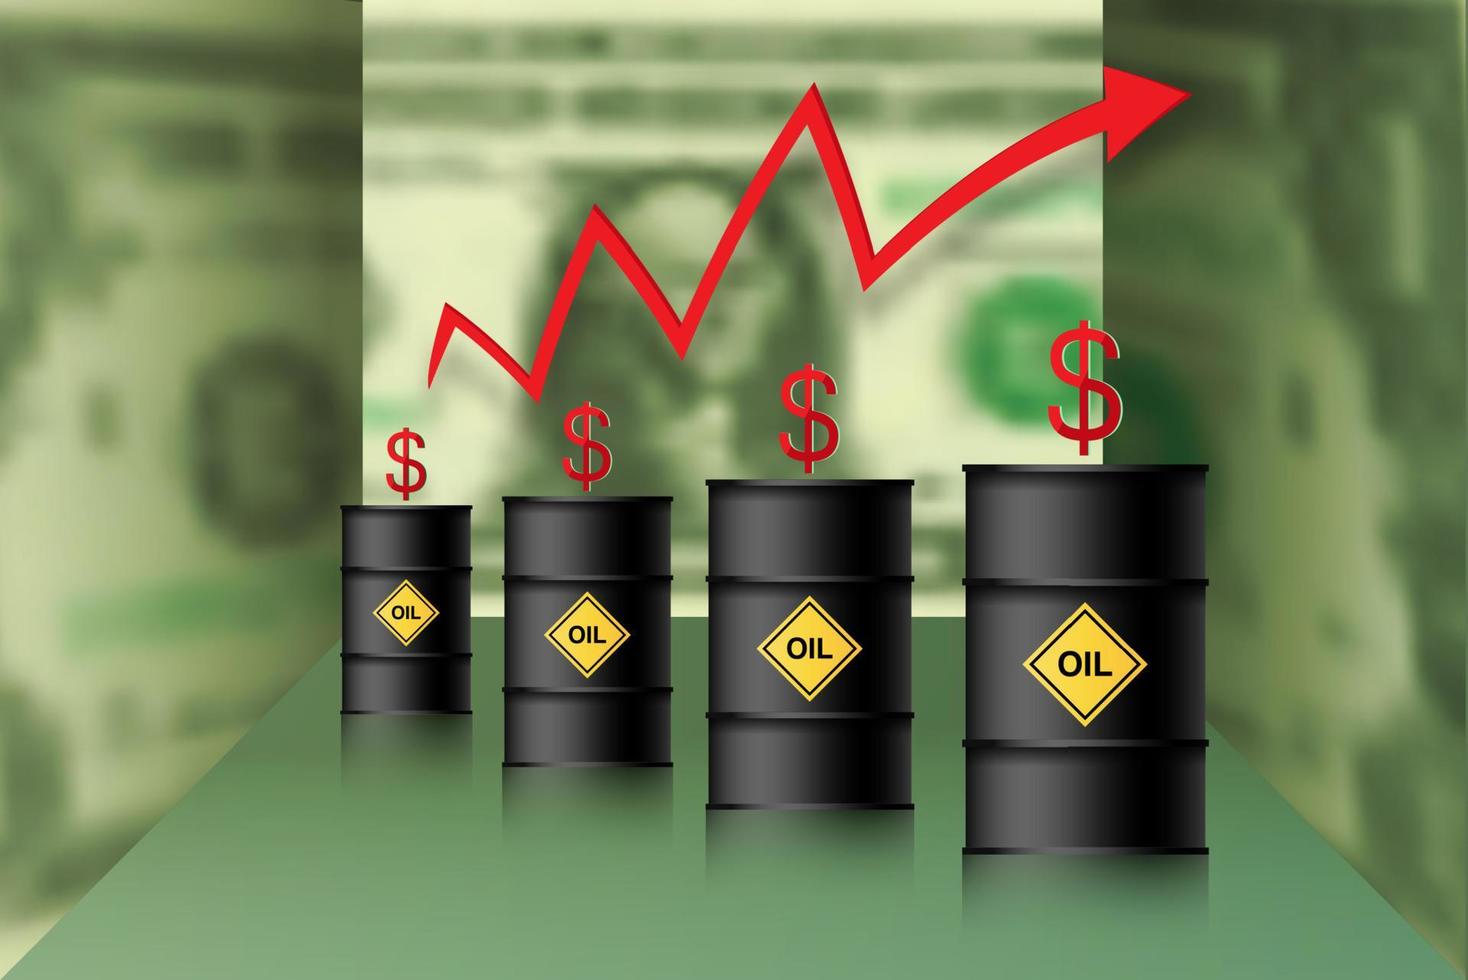 il prezzo del petrolio è in aumento. barili di petrolio, dollaro e infografica con una freccia rossa in alto. concetto in aumento dei prezzi del petrolio greggio, illustrazione vettoriale isolata su sfondo 3d di dollari verdi